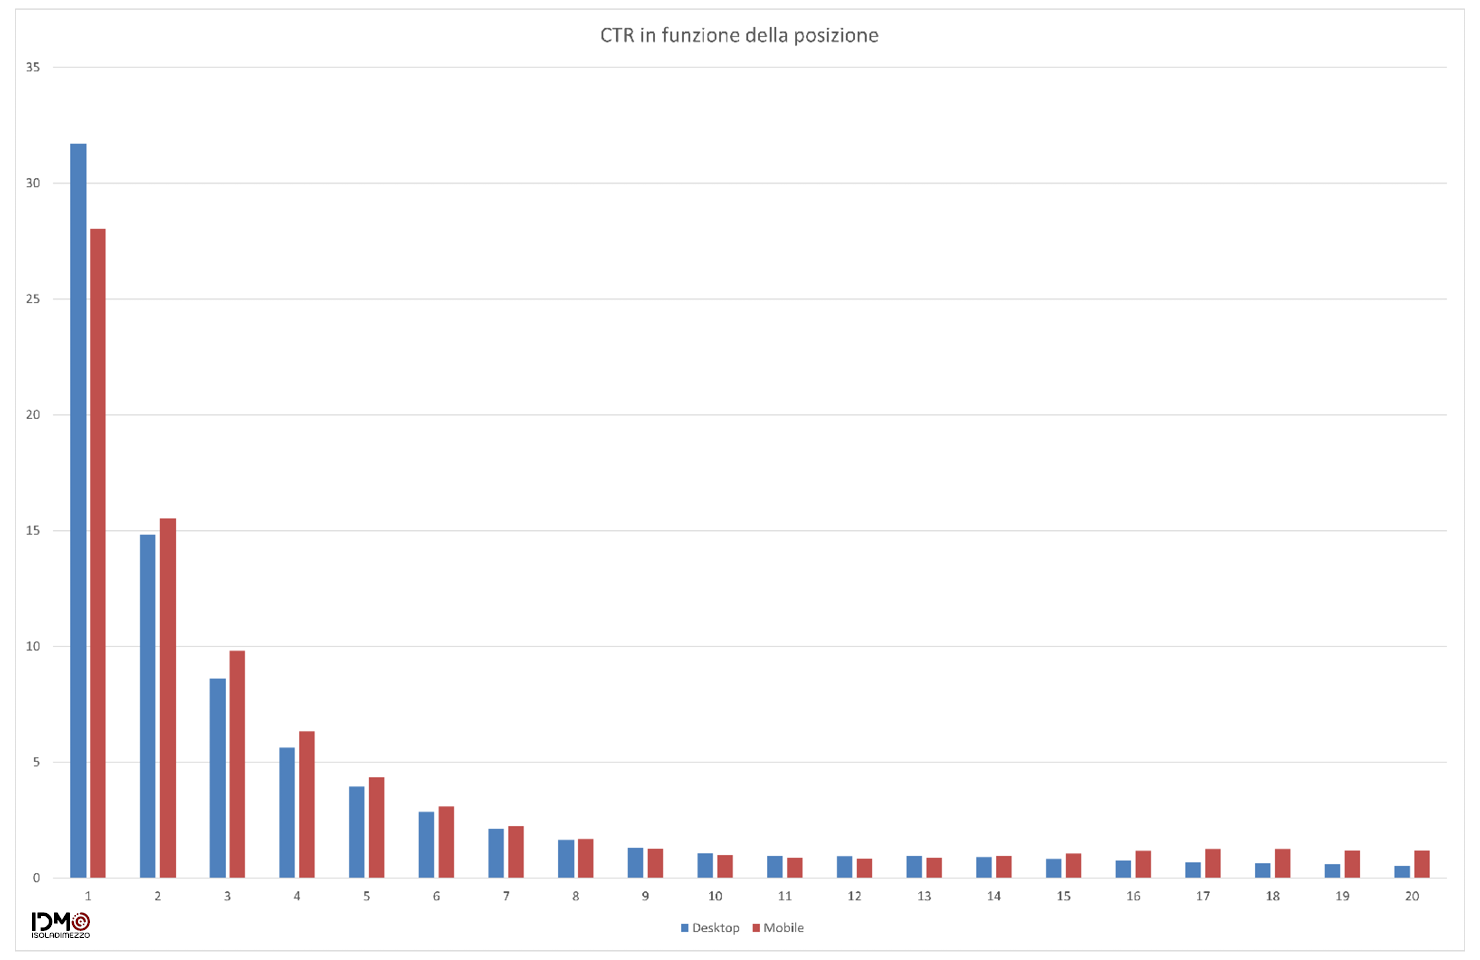 Grafico 1 - CTR delle prima 20 posizioni in SERP per Desktop e Mobile